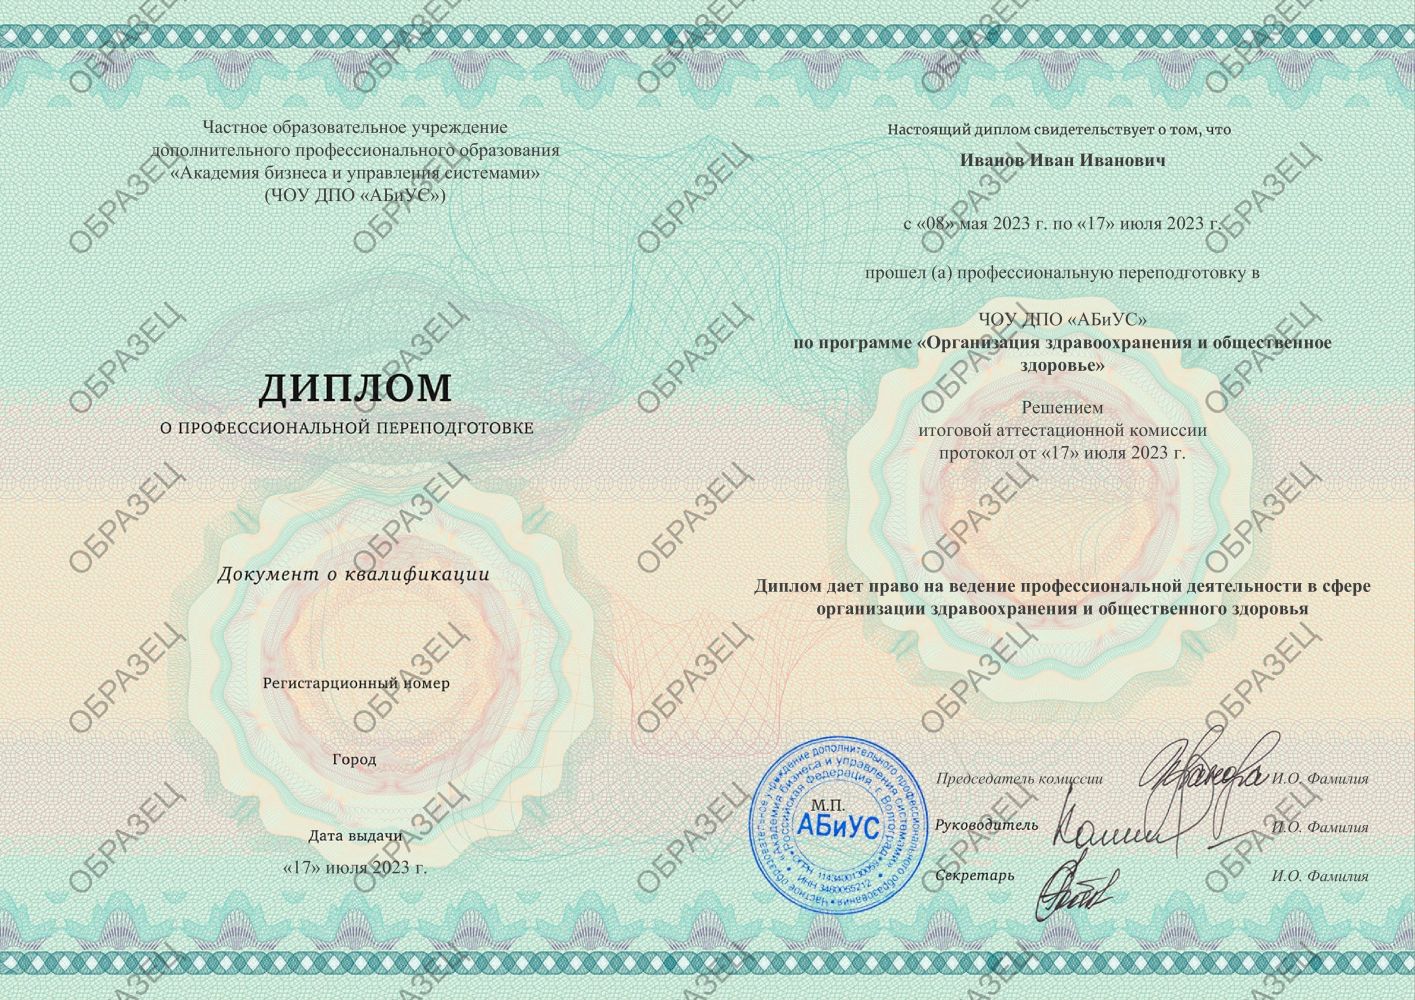 Диплом Организация здравоохранения и общественное здоровье 280 часов 18625 руб.